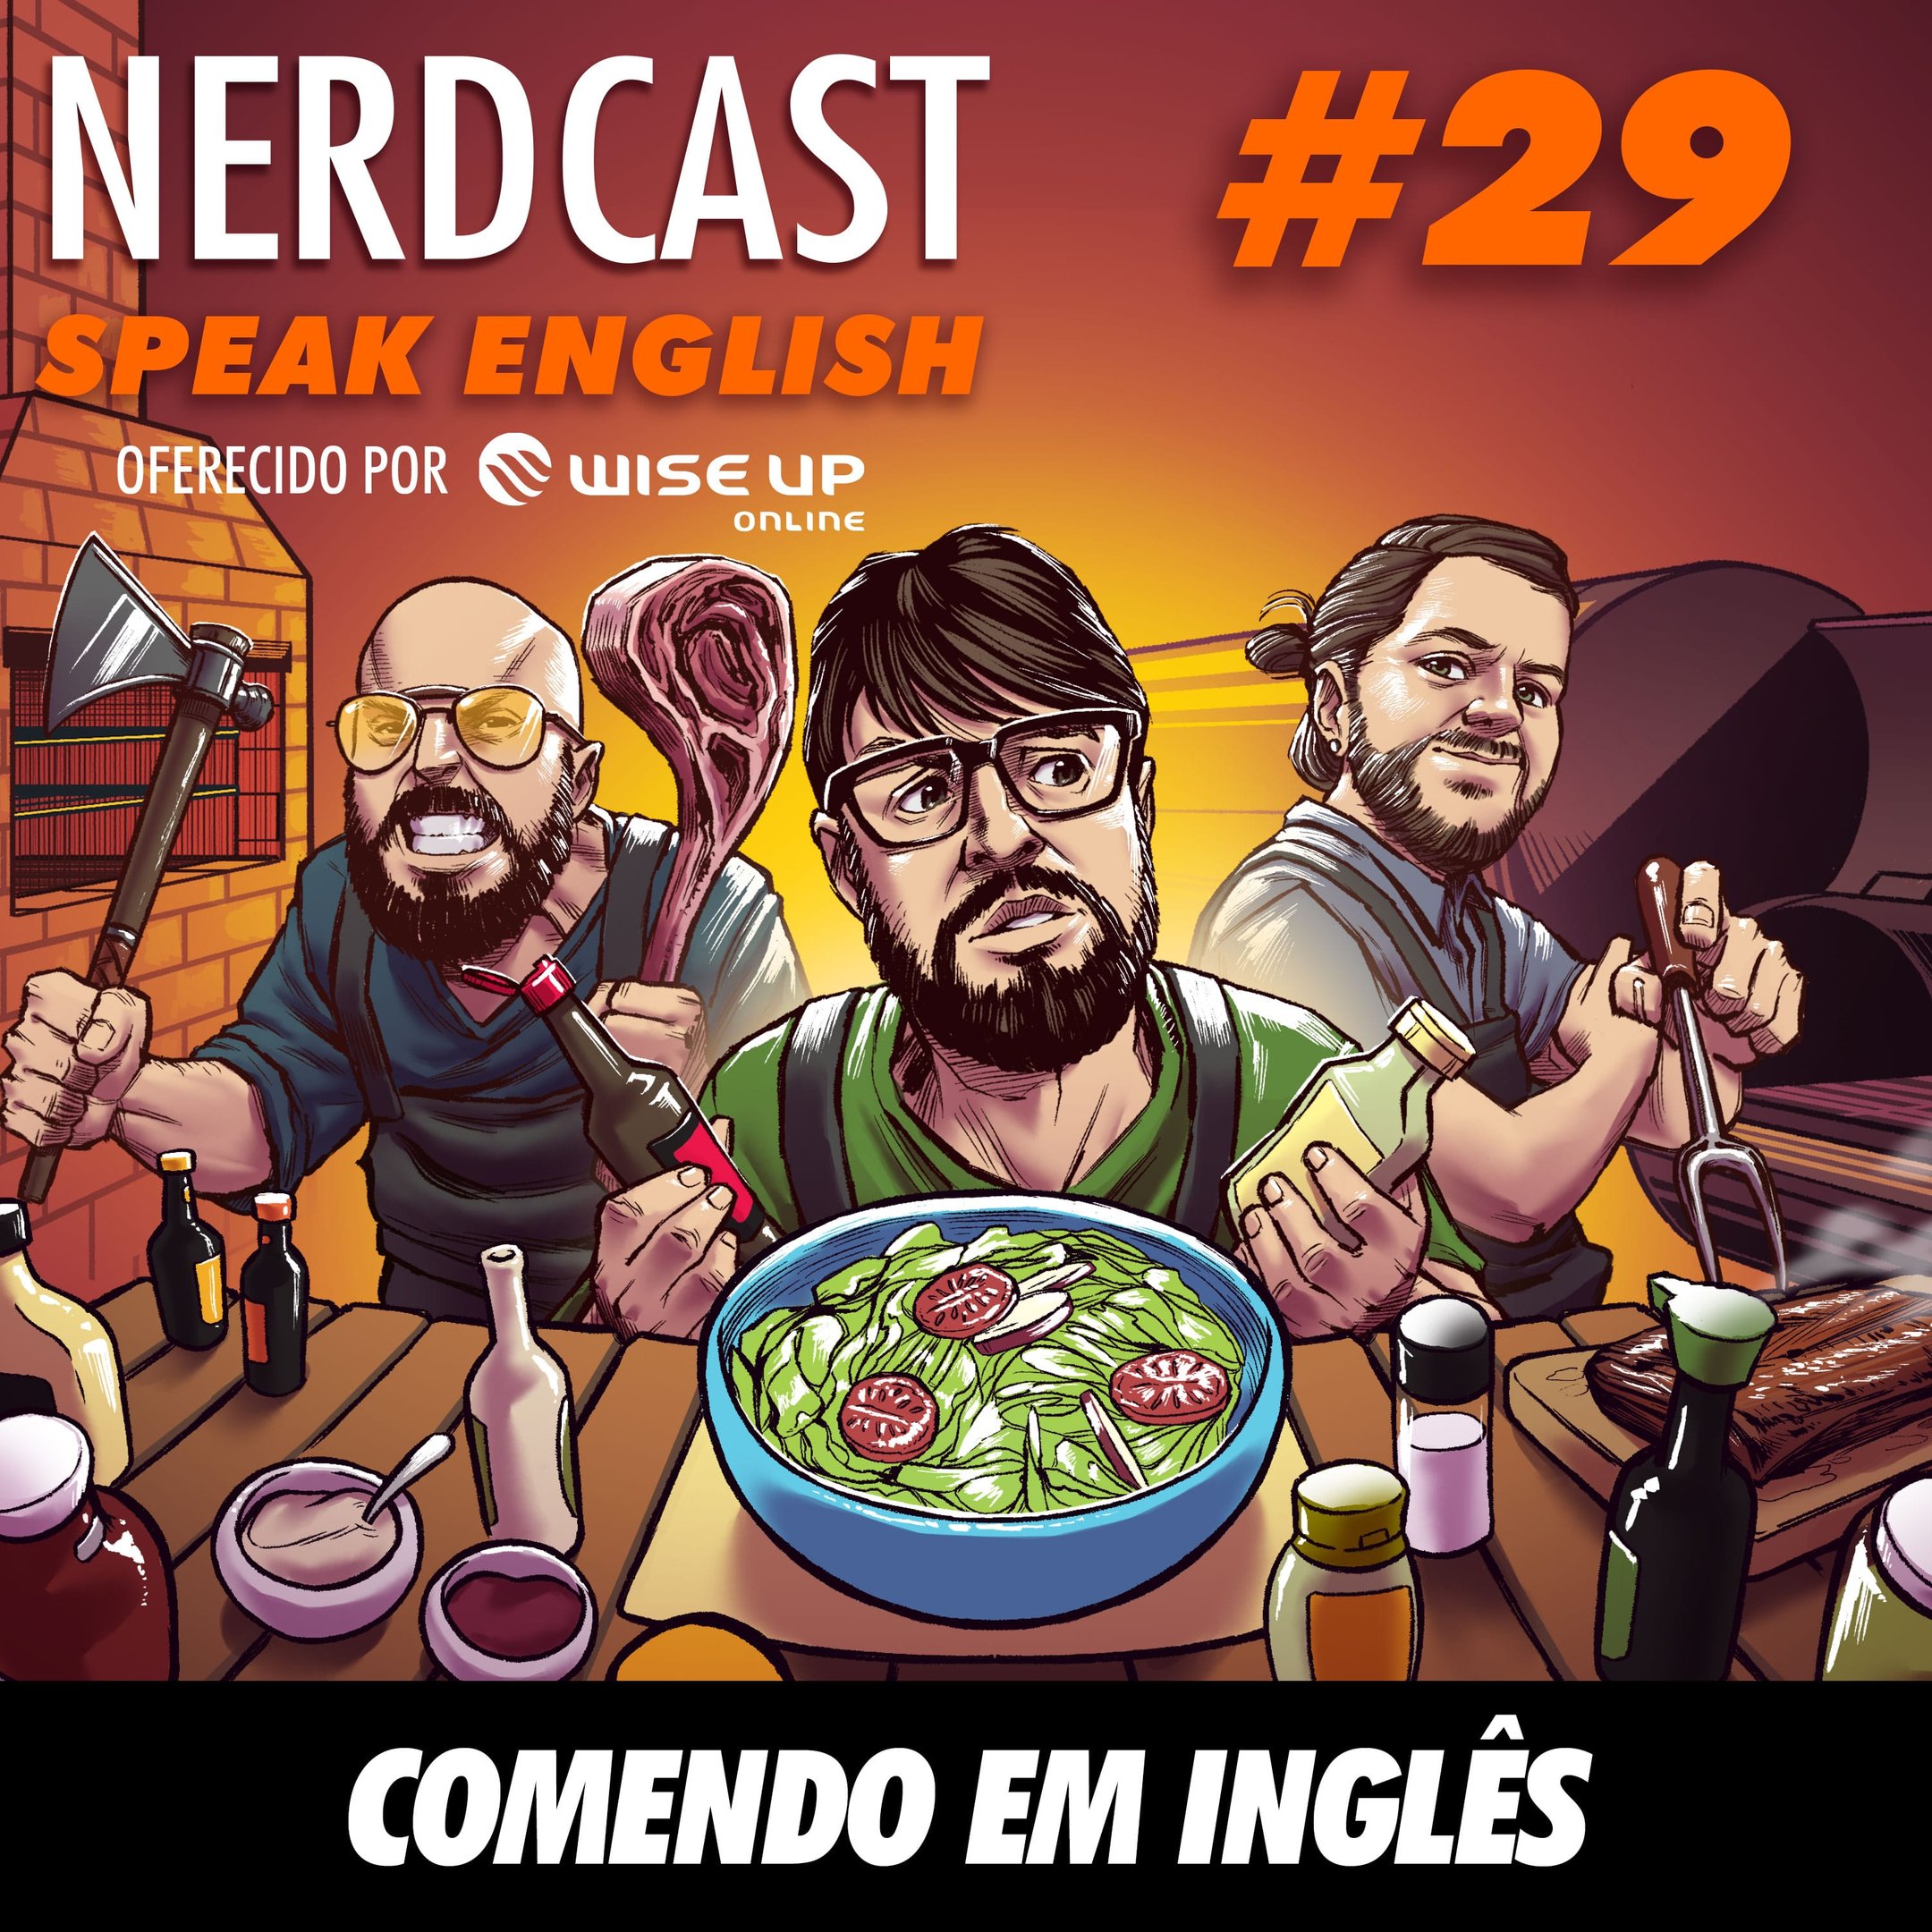 Speak English 29 - Comendo em inglês